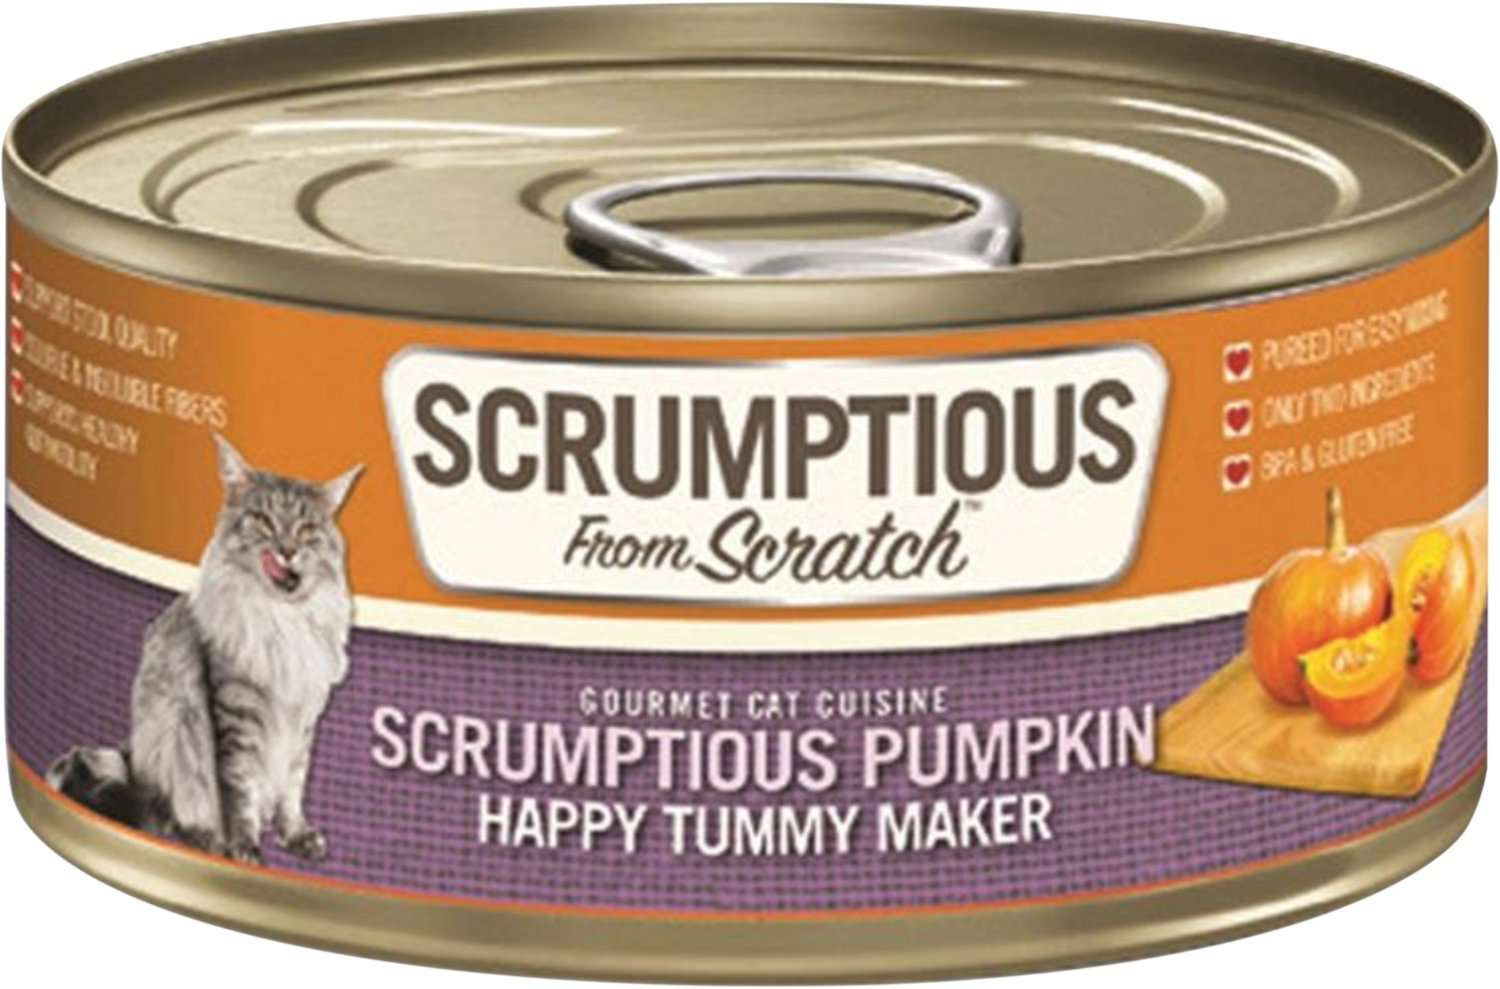 SCRUMPTIOUS FROM SCRATCH Scrumptious Pumpkin Puree Canned ...